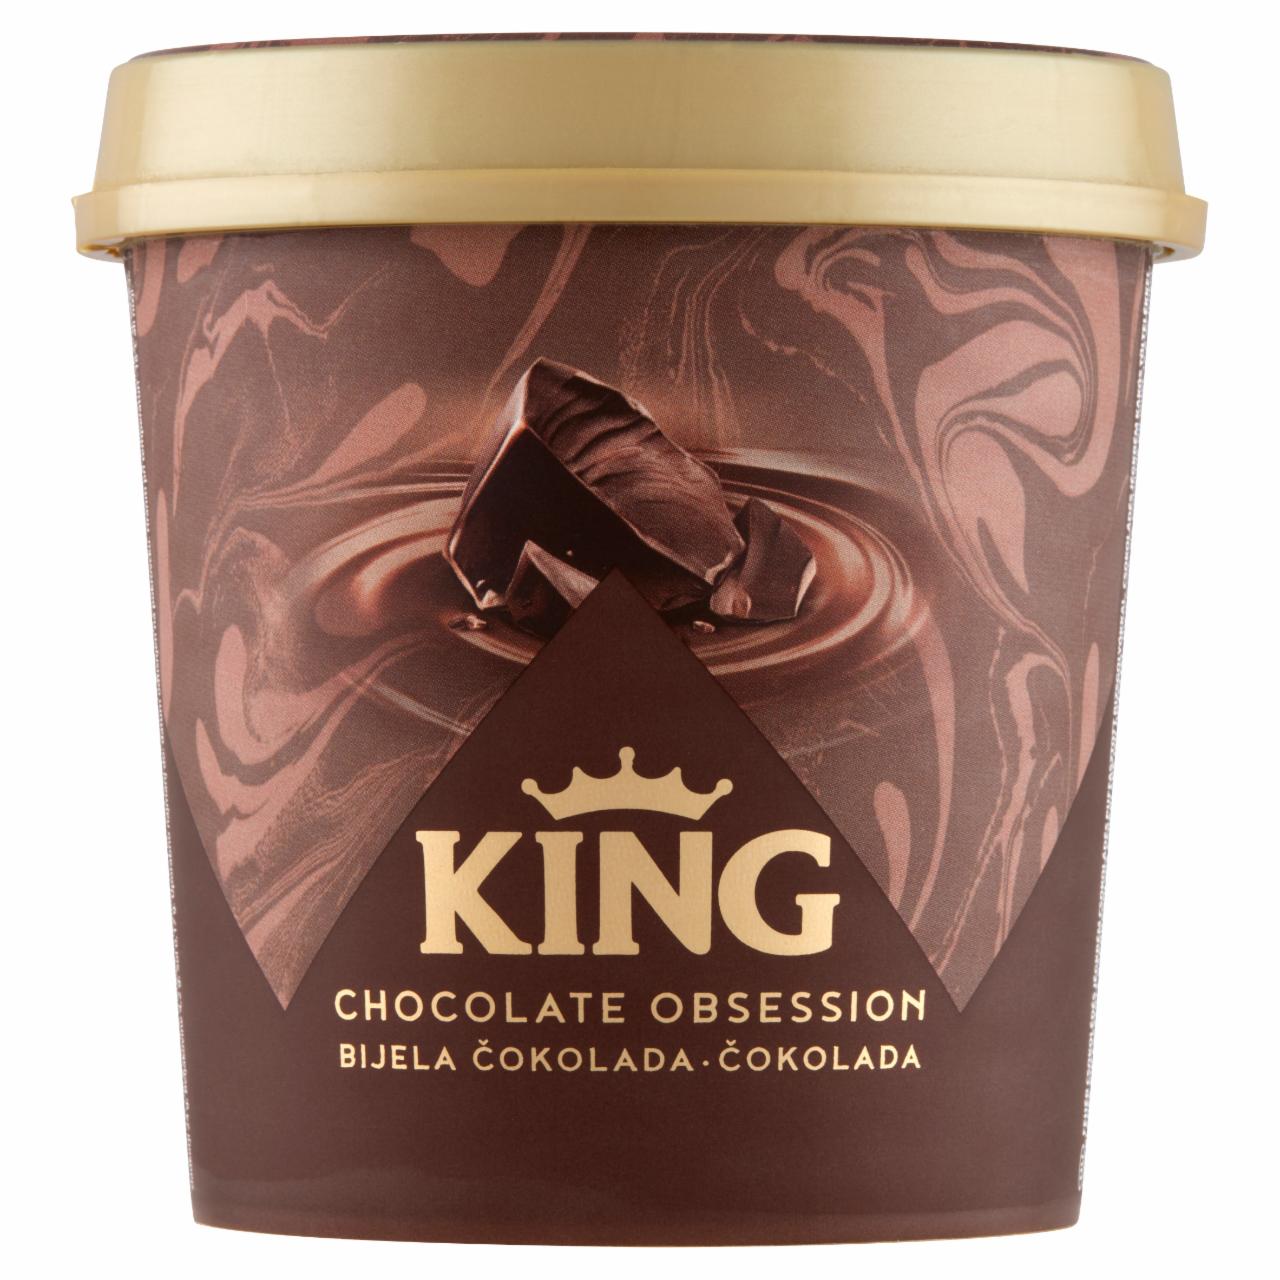 Képek - King fehér és kakaós csokoládés jégkrém csokoládés puffasztott rizsgolyókkal-gabonagolyókkal 450 ml